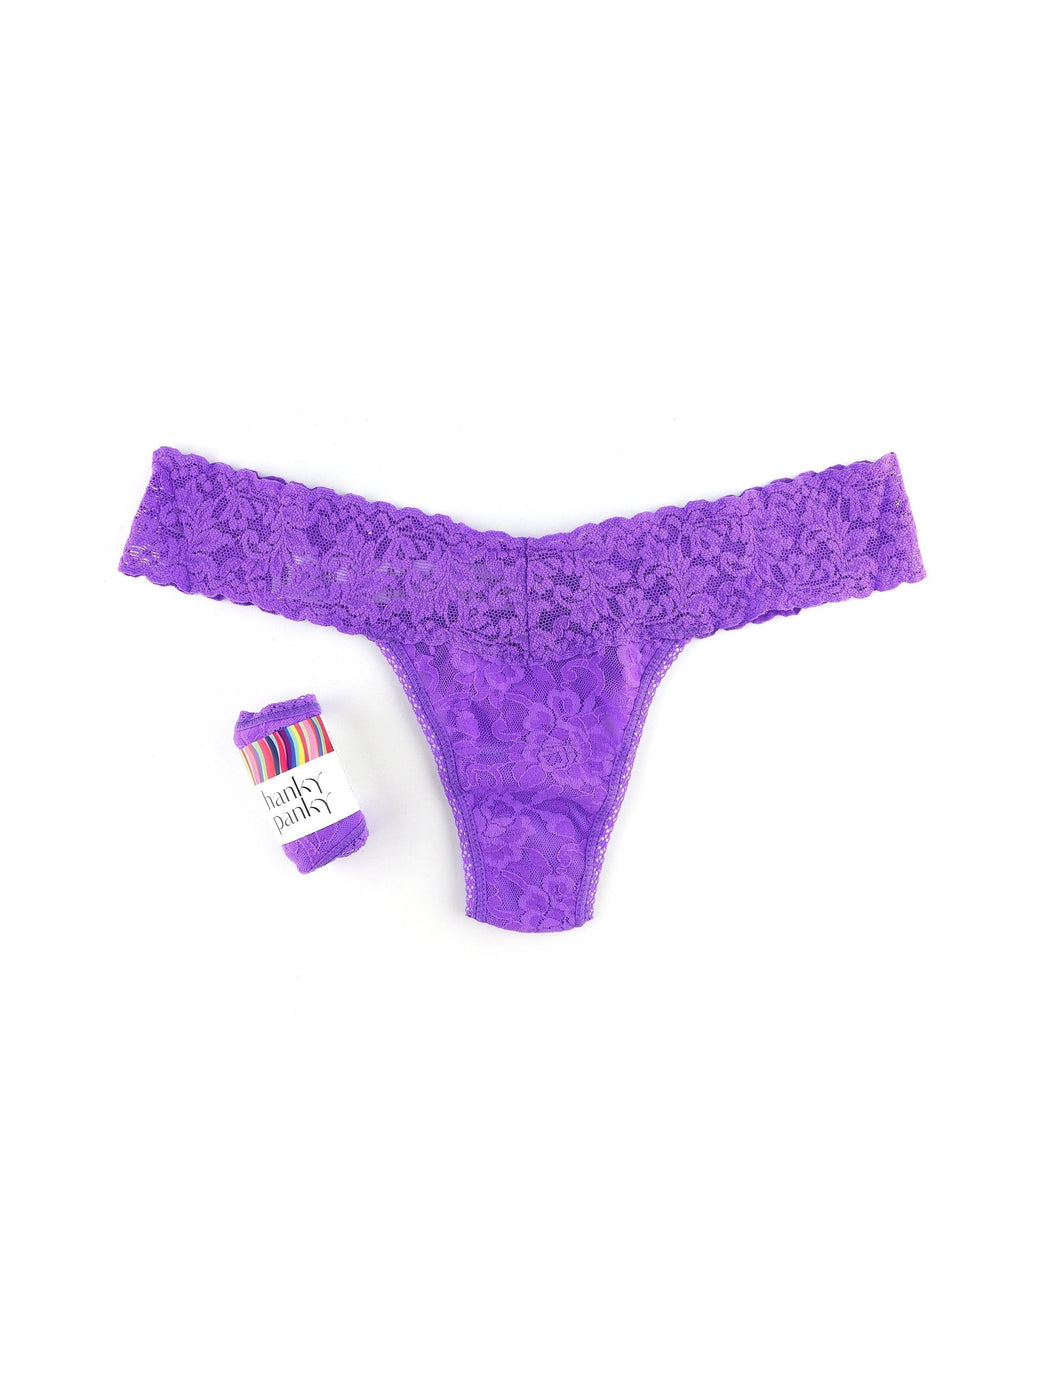 Petite Size Signature Lace Low Rise Thong Vivid Violet Purple